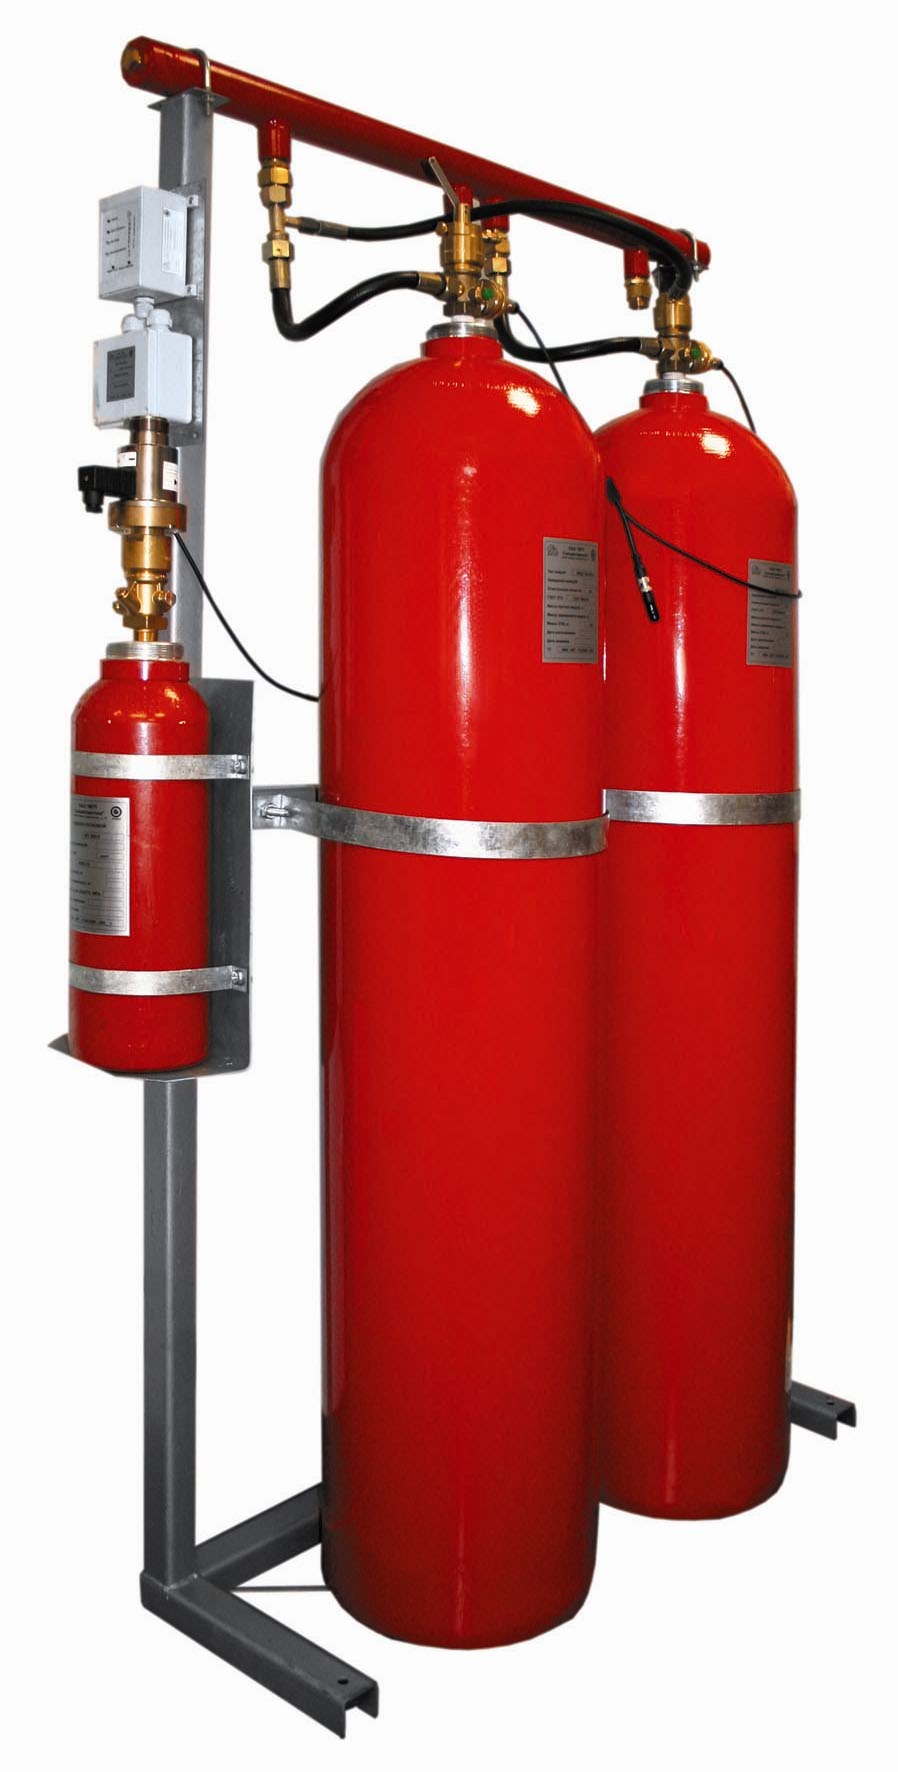 МГП 150-20-15 Э Модуль газового пожаротушения серии АТАКА